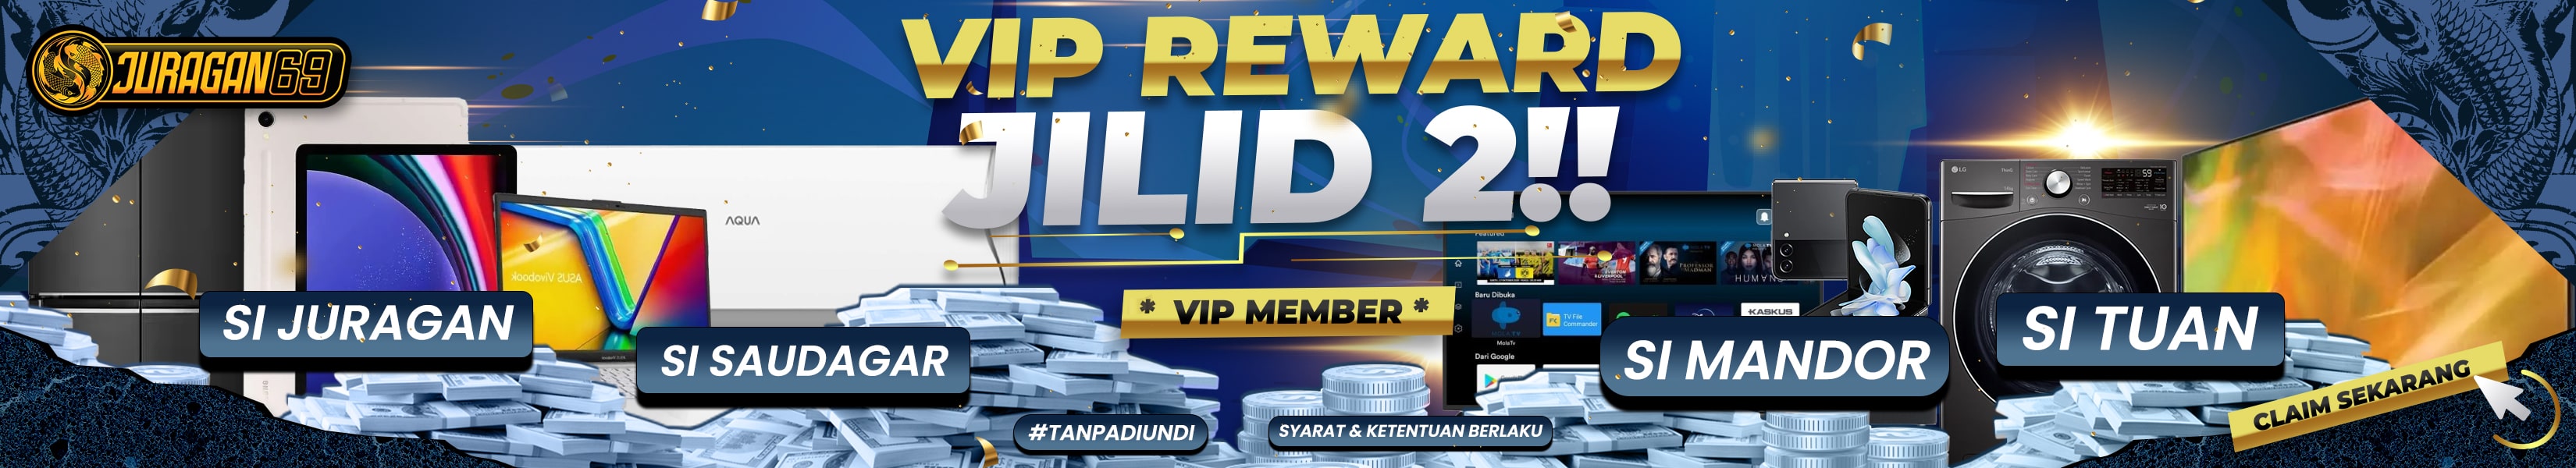 VIP REWARDS JILID 2